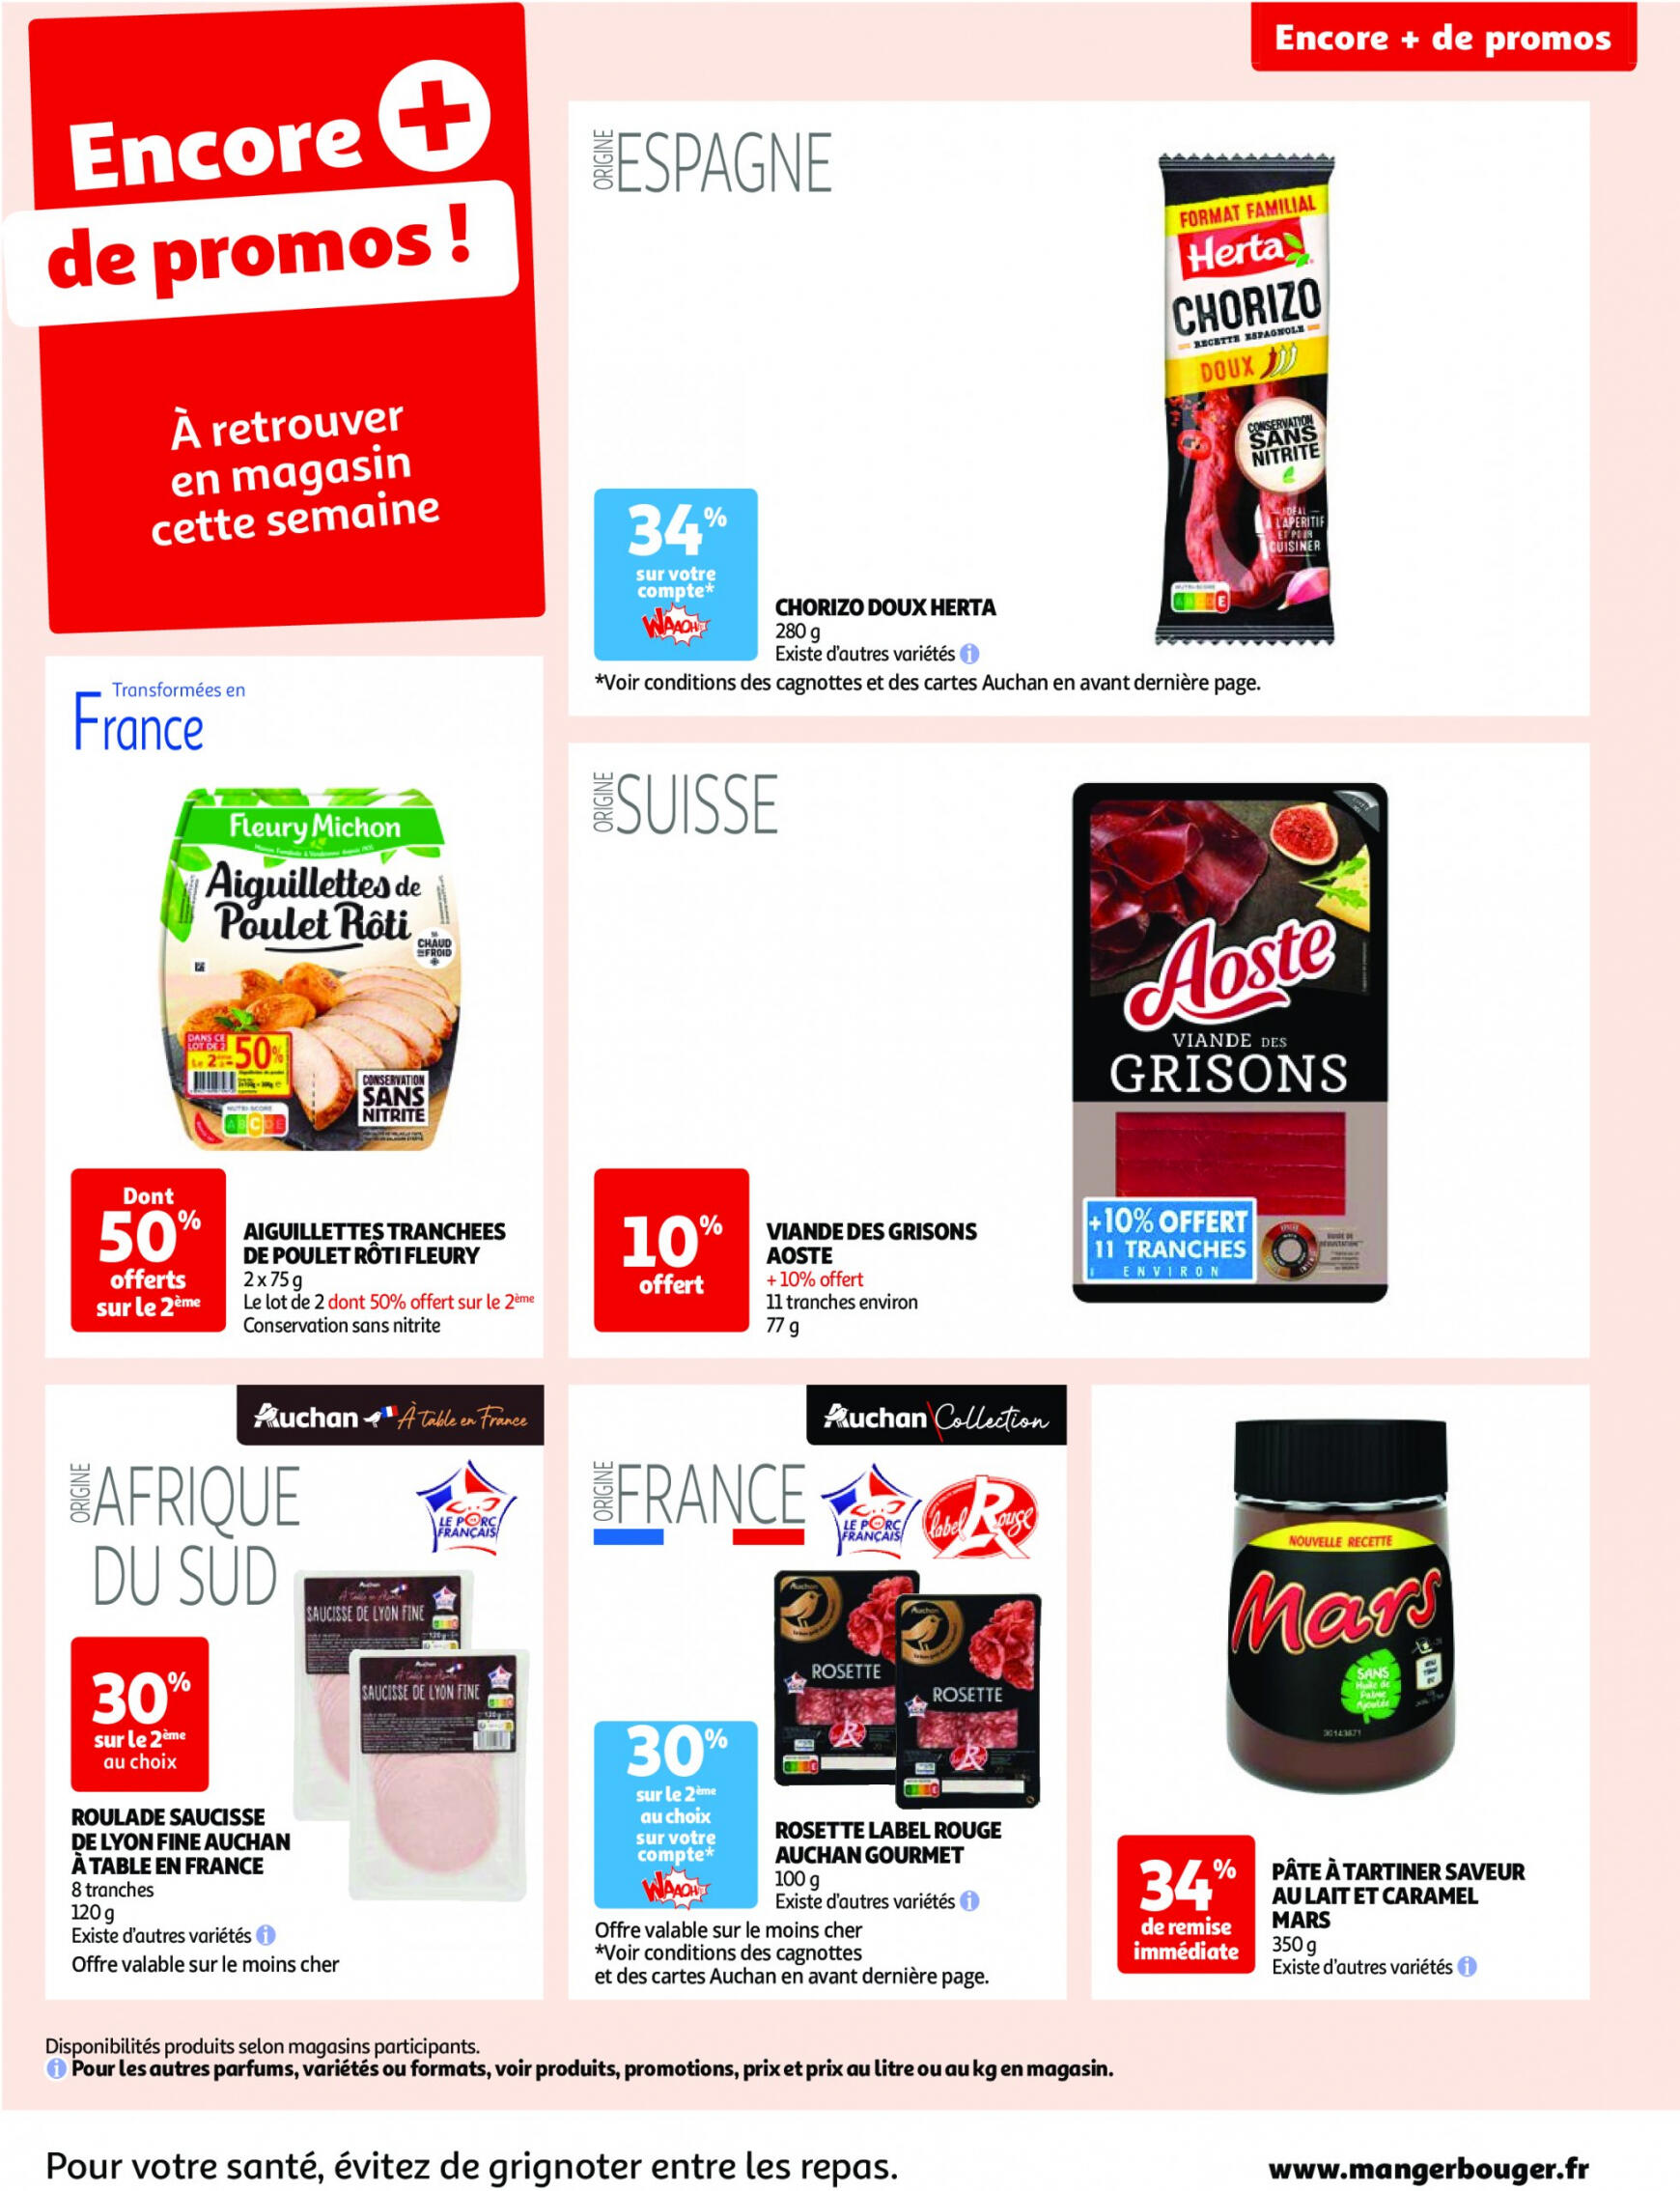 auchan - Prospectus Auchan actuel 30.04. - 06.05. - page: 71